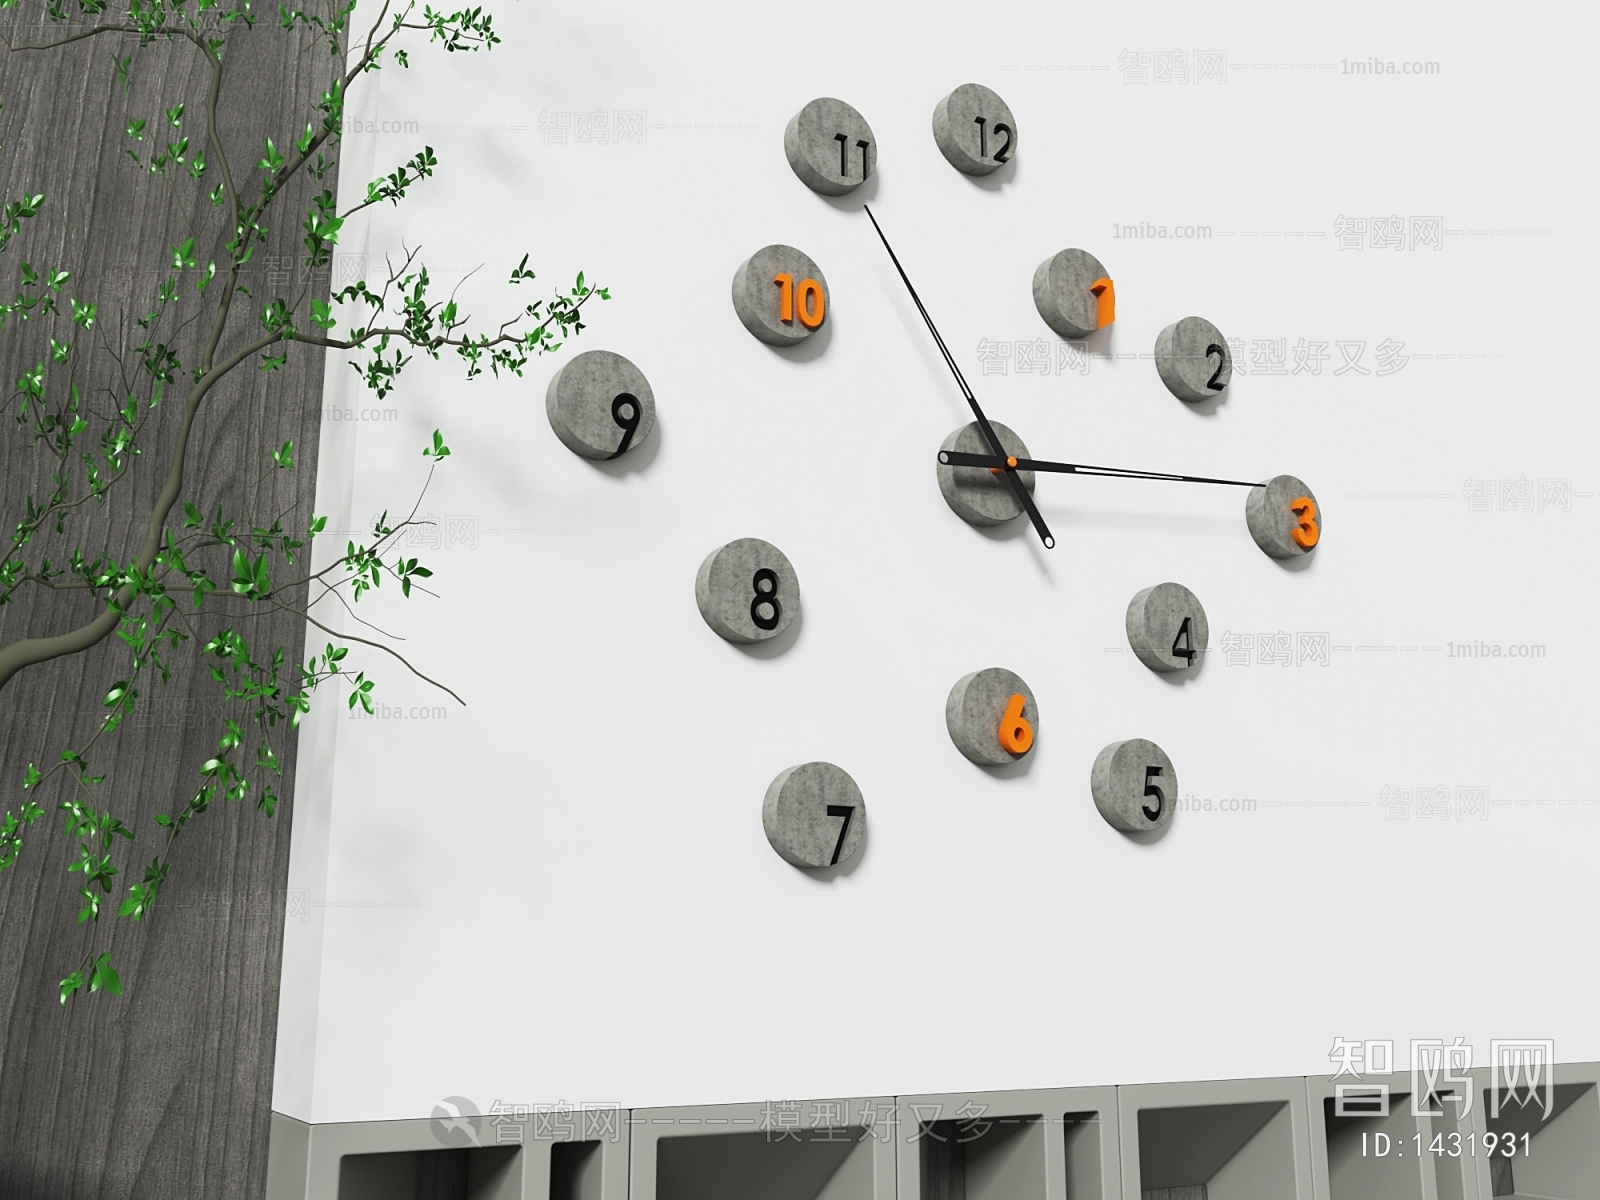 Wabi-sabi Style Wall Clock